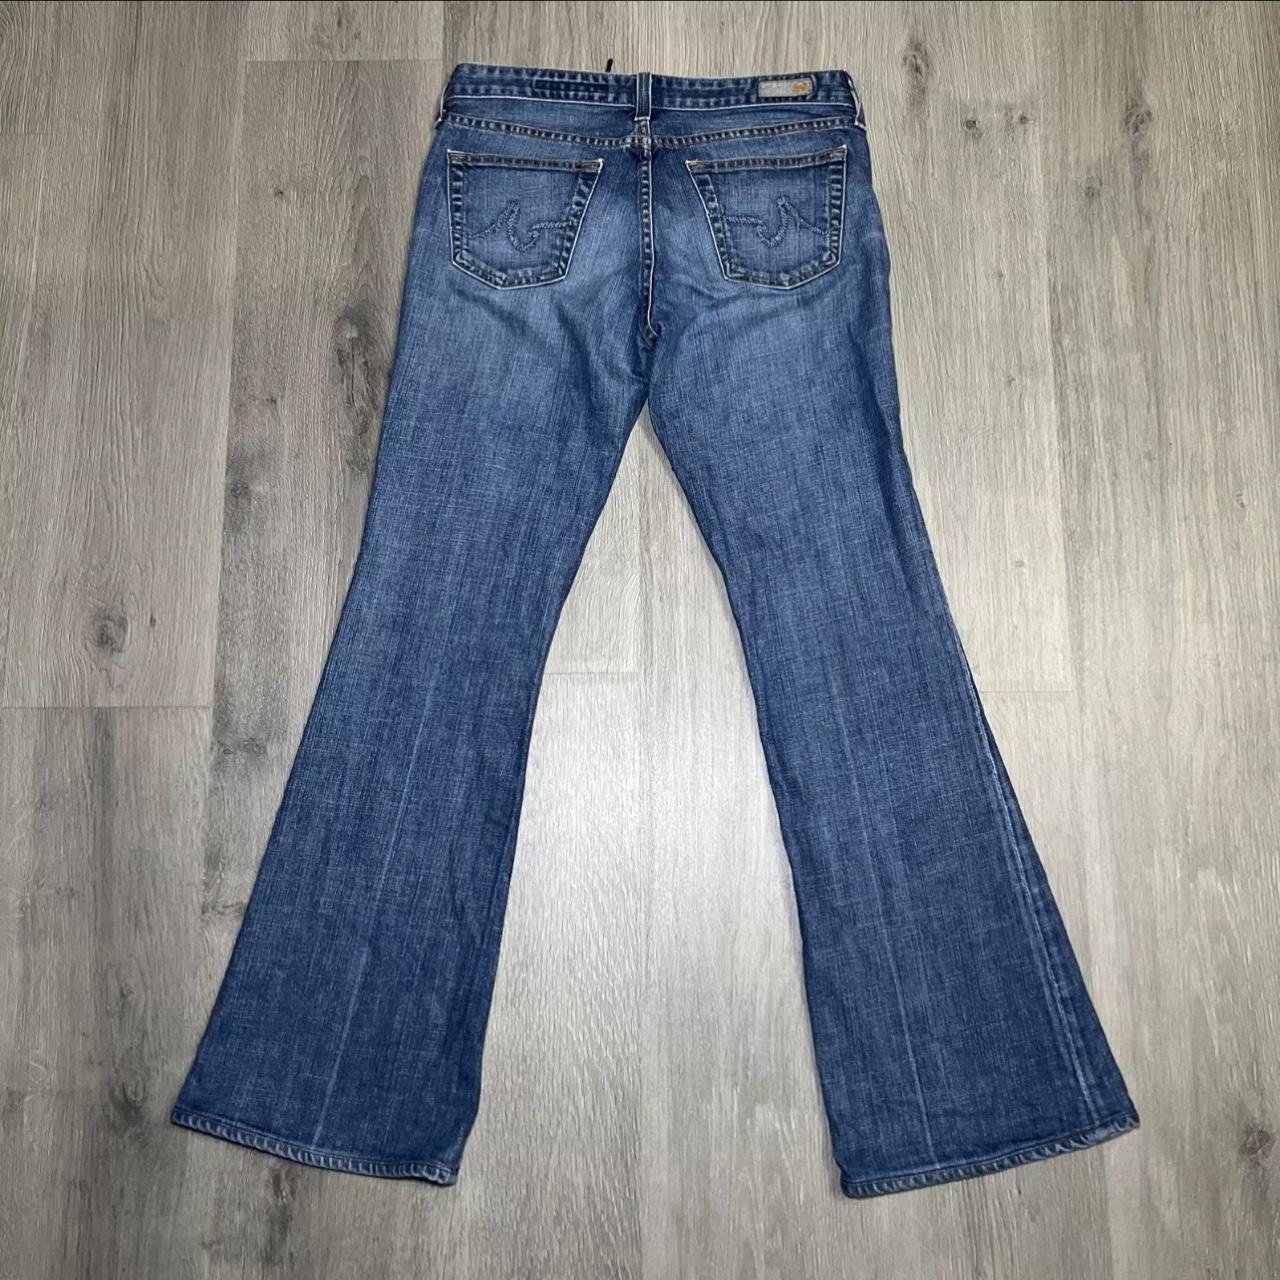 Zara jeans women size 10 blue RN#77302